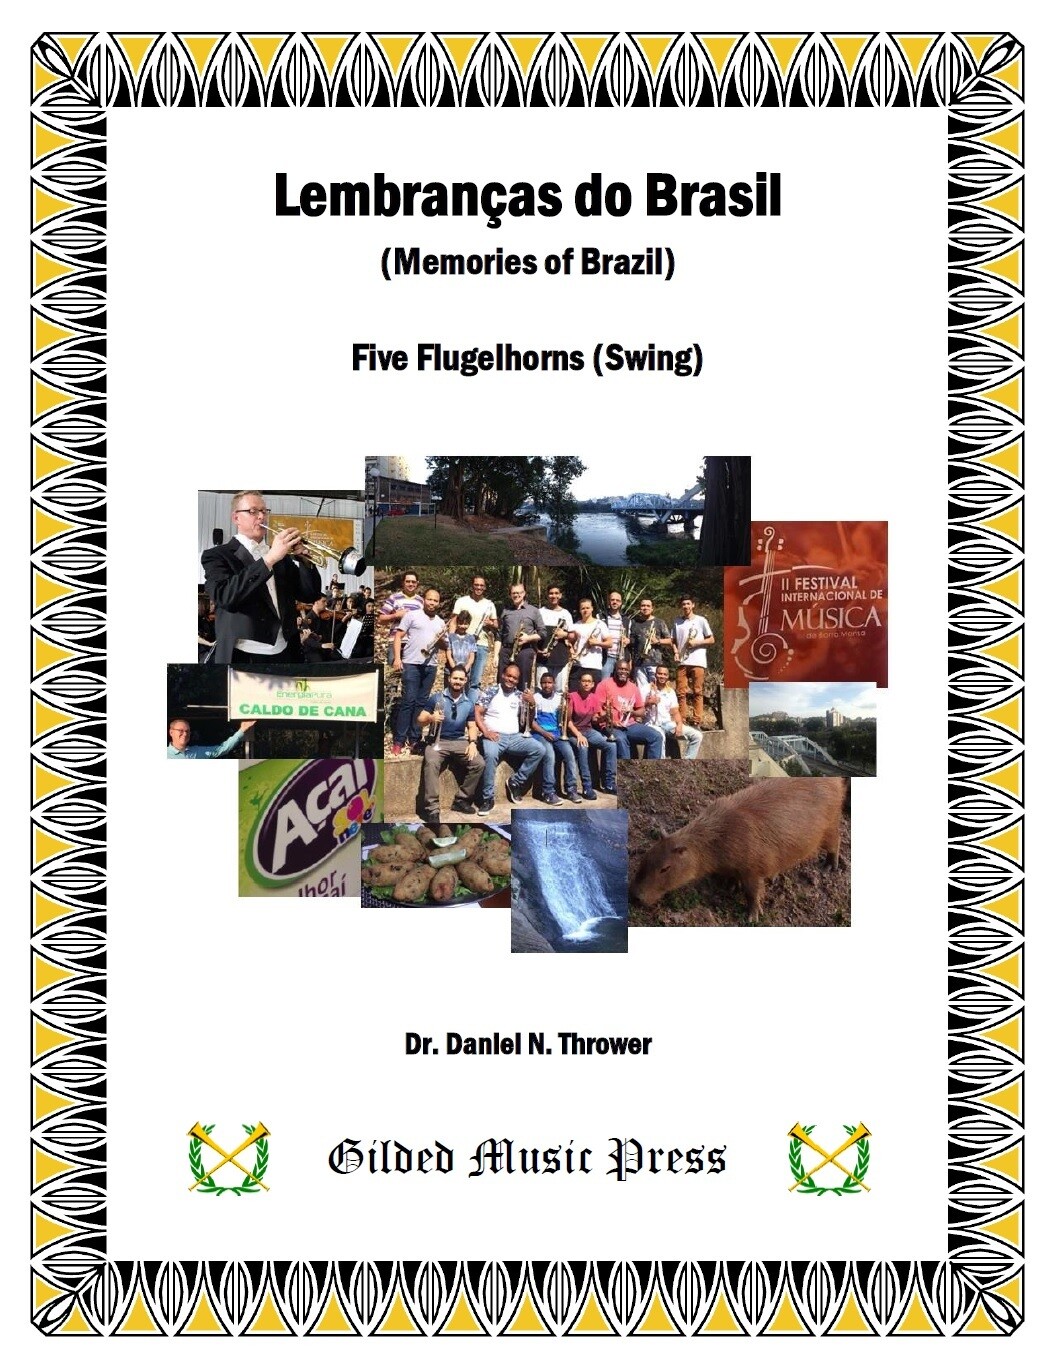 GMP 2051: Lembranças do Brasil ("Memories of Brazil"), (5 Flugelhorns), Dr. Daniel Thrower